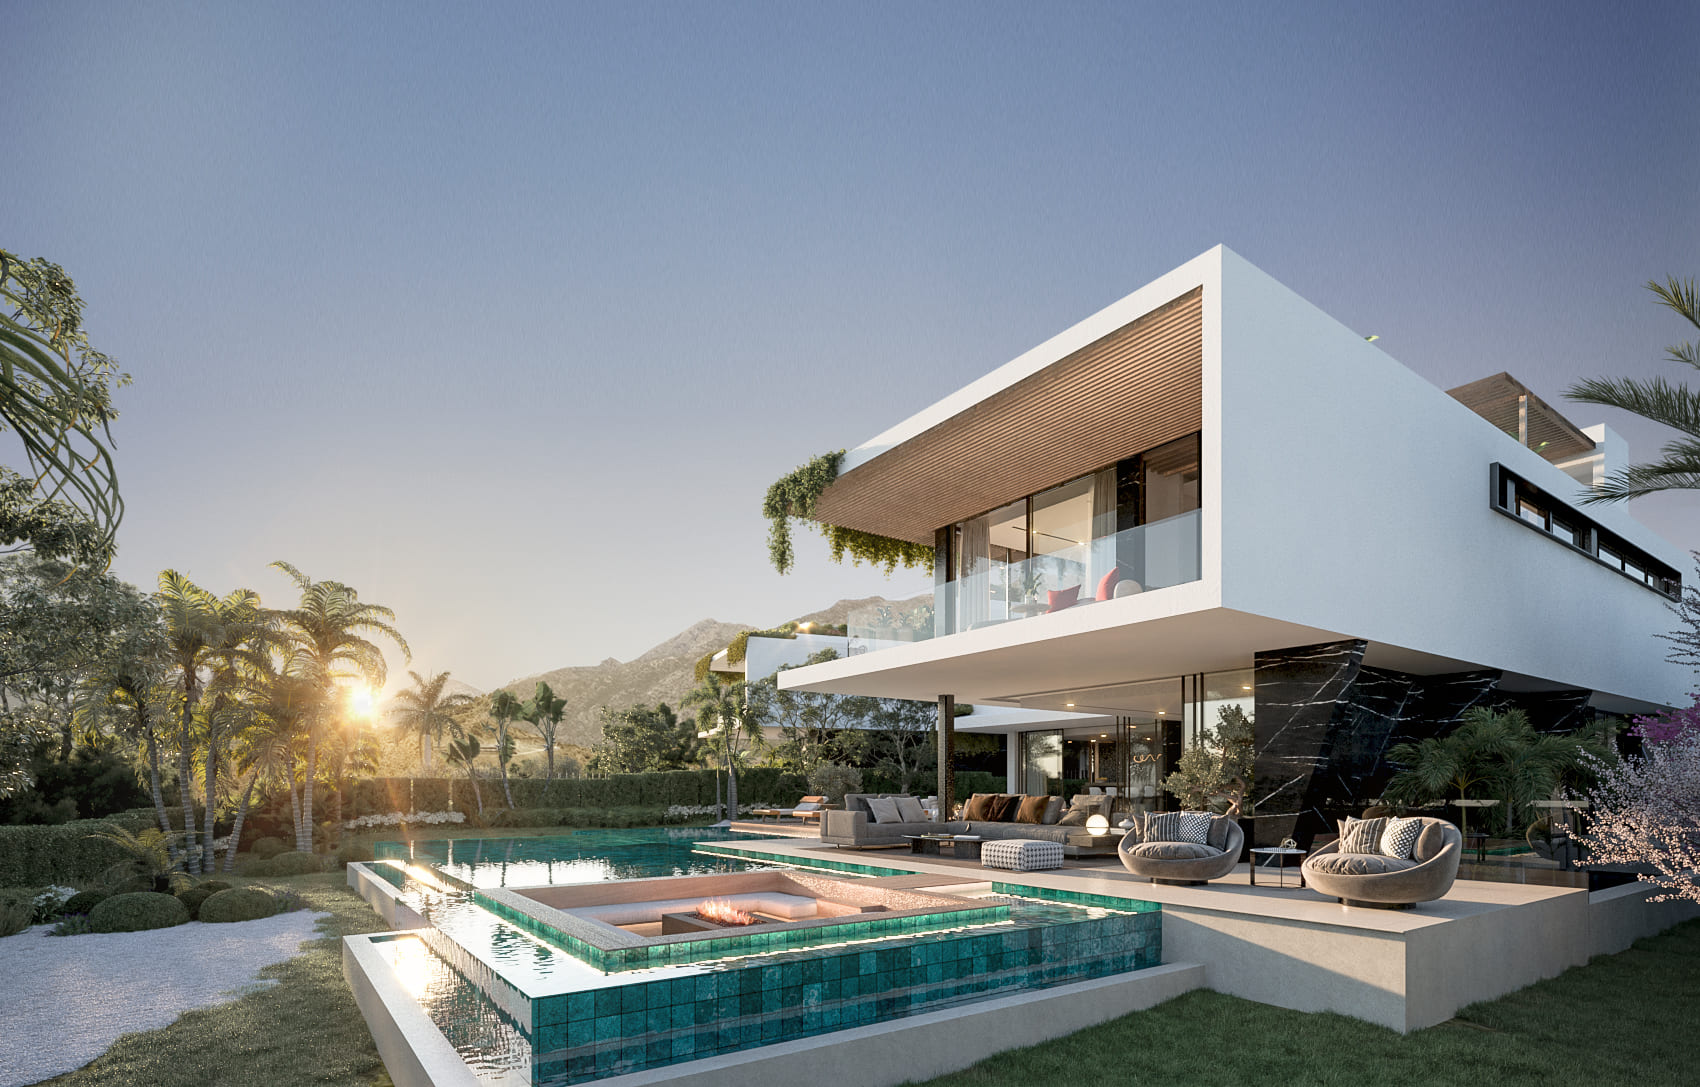 VIVI REAL ESTATE: Middenverdieping appartement te koop in Marbella met zwembad.